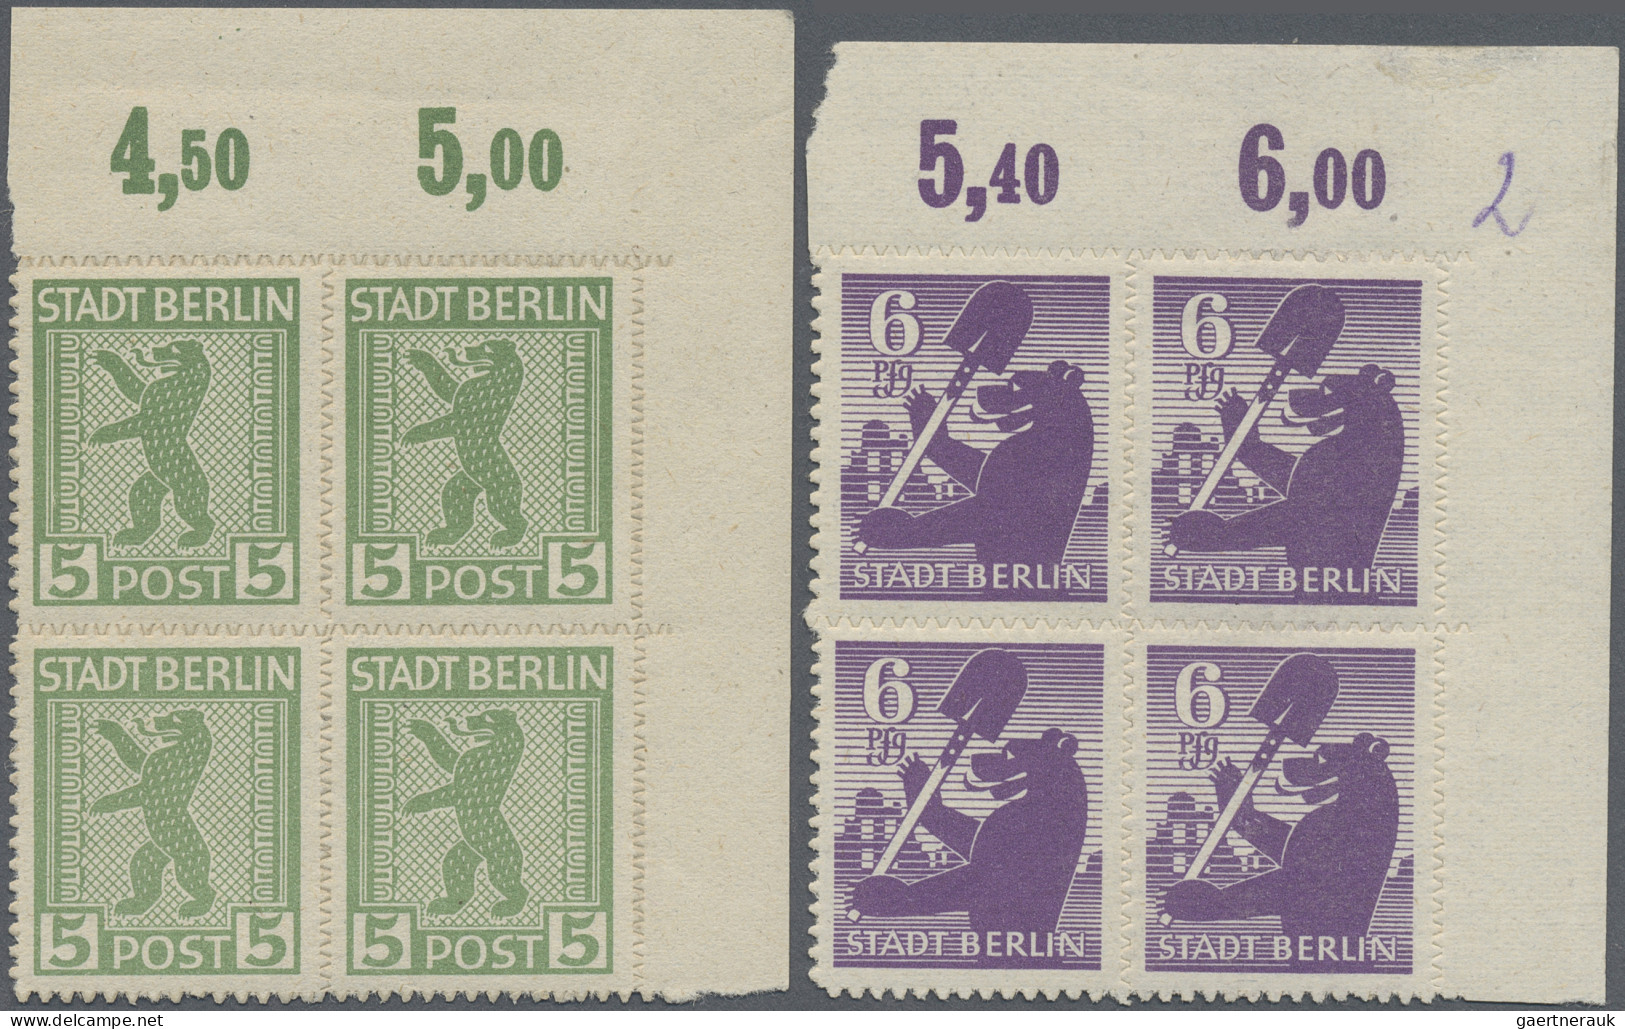 Sowjetische Zone - Berlin und Brandenburg: 1945 Kompletter Satz der 7 Werte je i